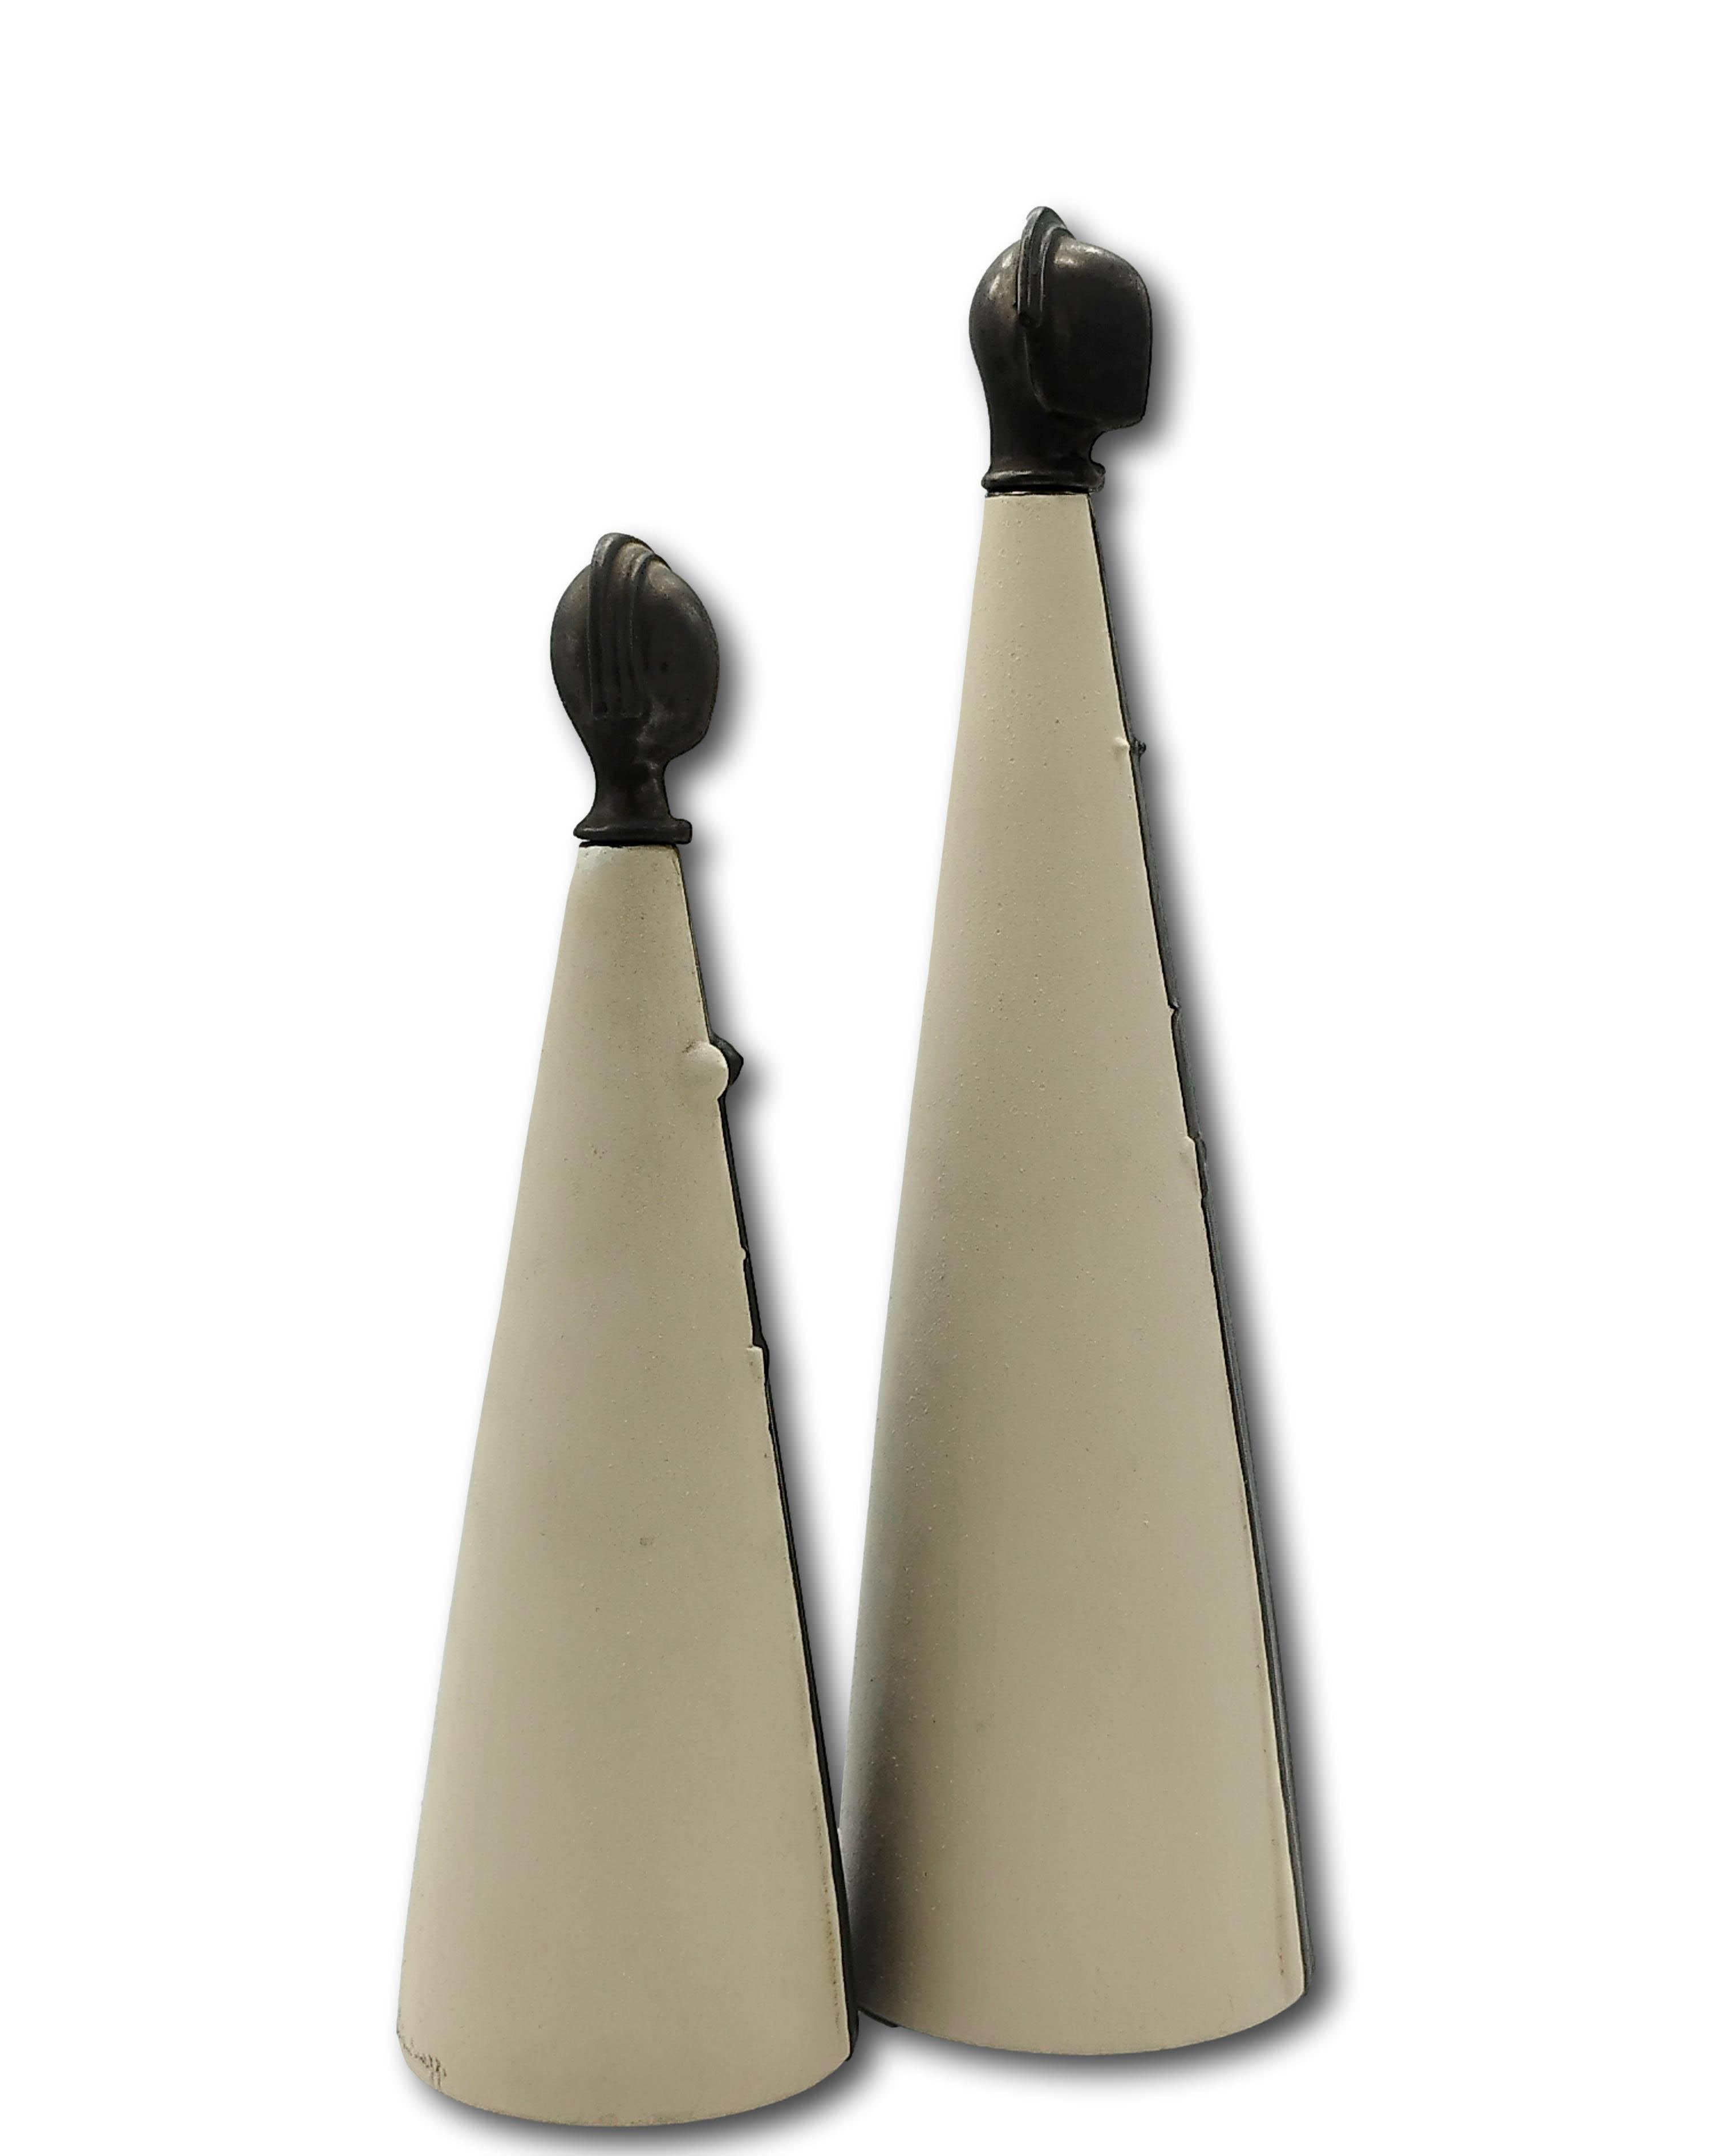 Raro par de botellas/esculturas de cerámica bicolor en blanco y negro con tapones de metal Lei & Lui, firmadas Chiminazzo.
Tamaño mujer cm. h.30x20x20